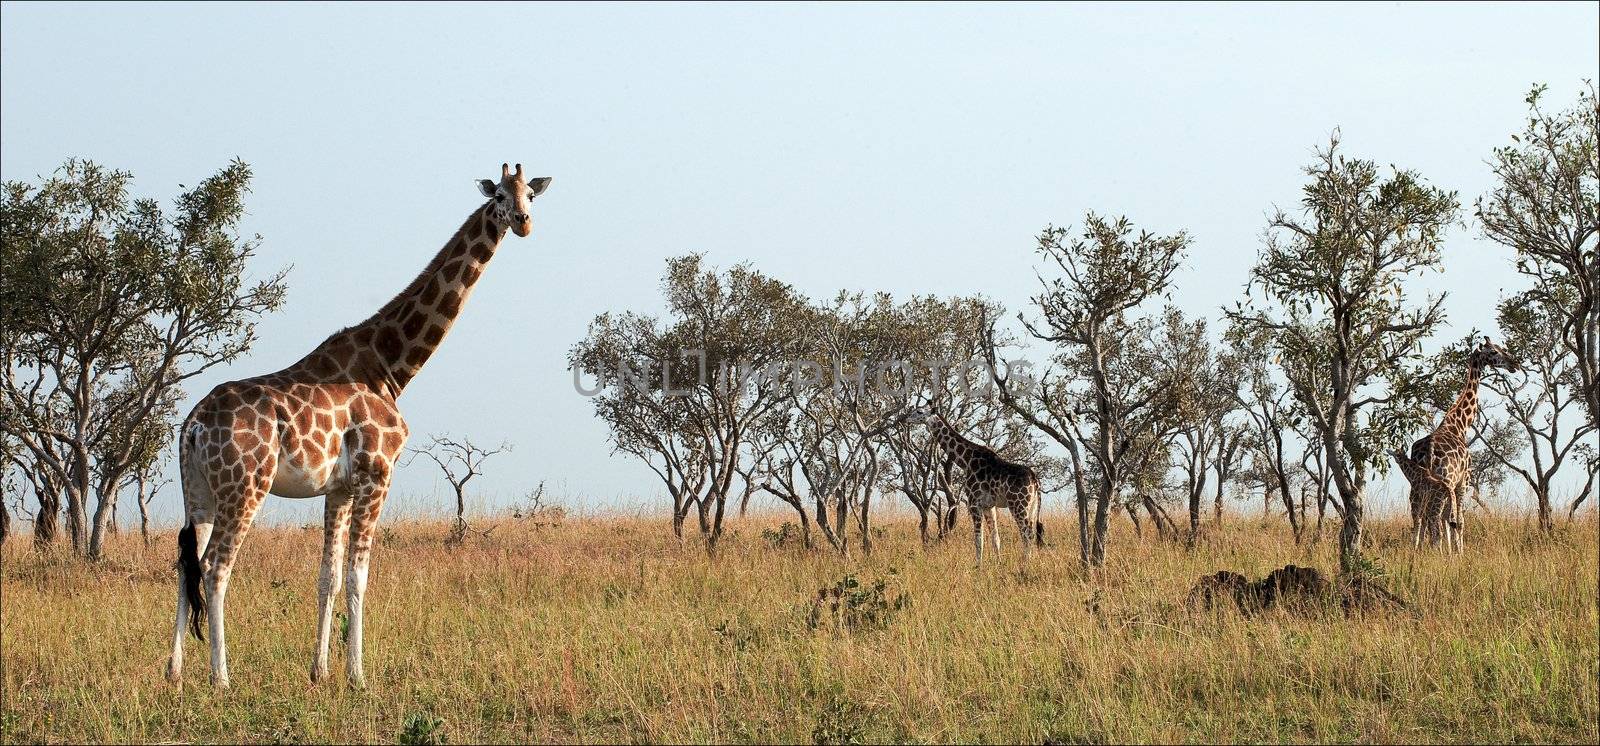 Giraffes. by SURZ